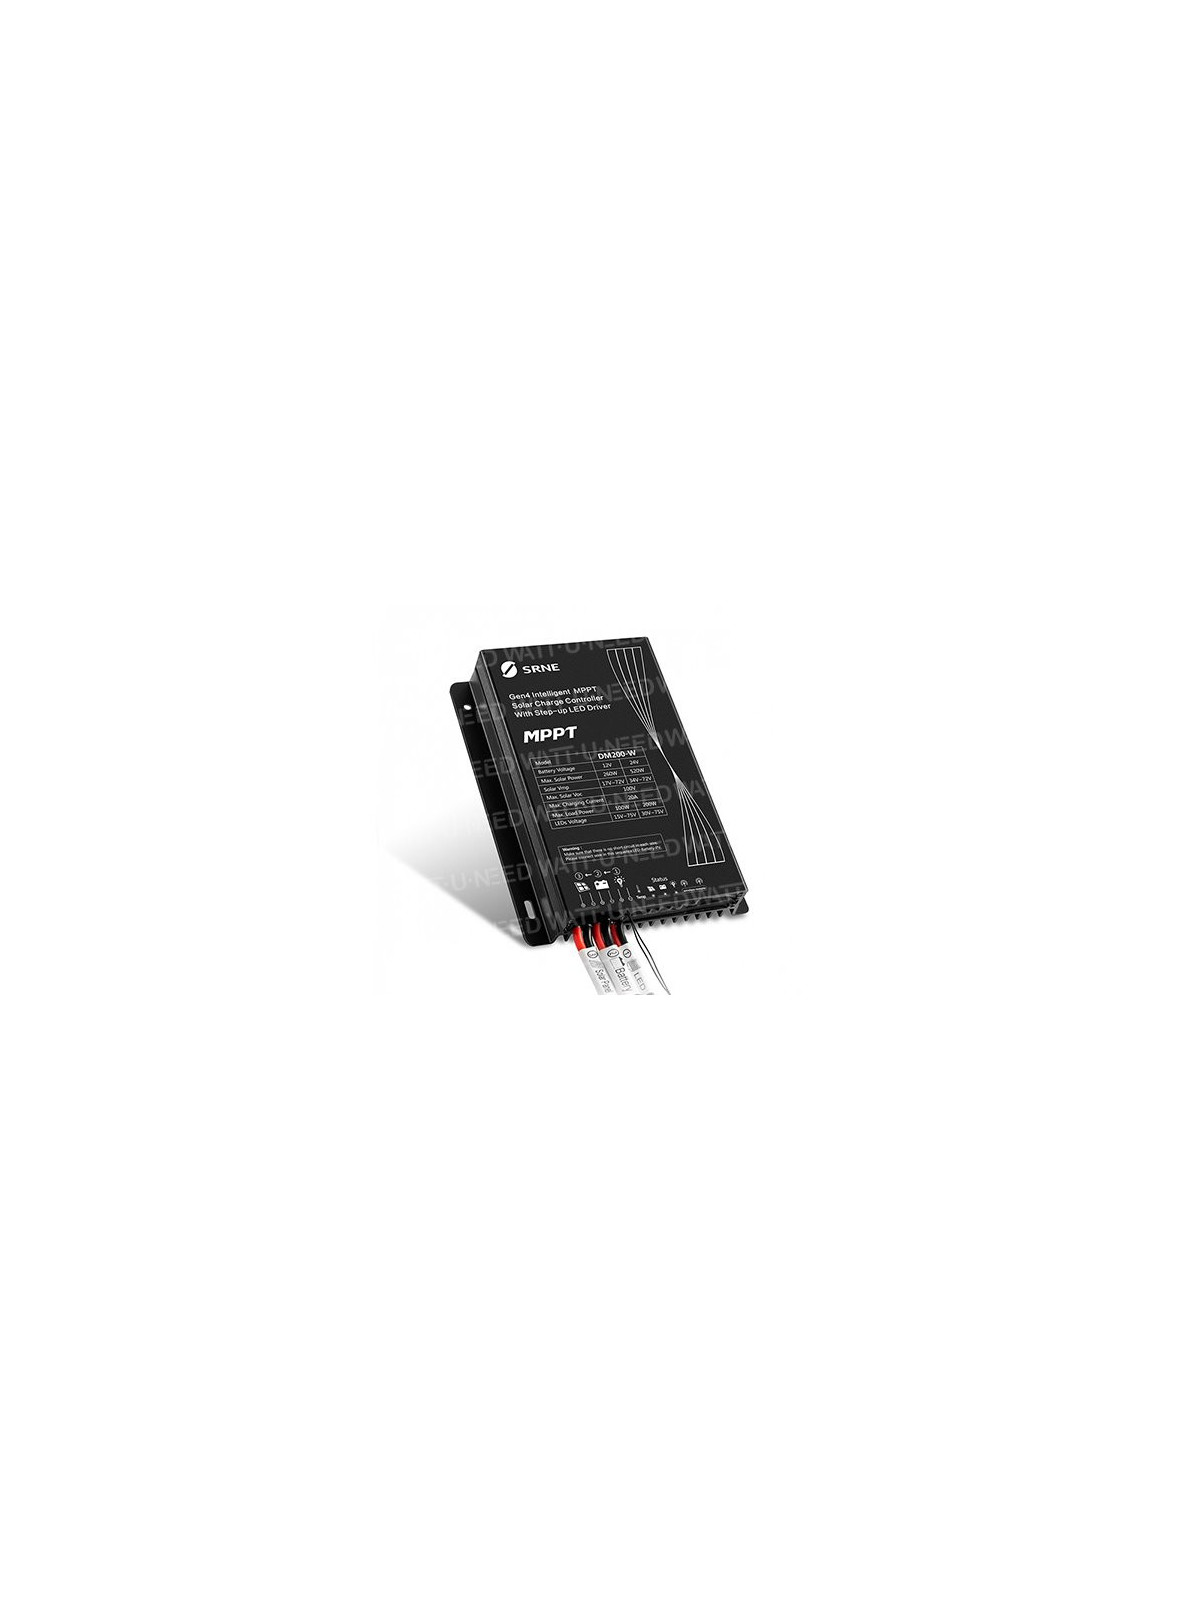 SRNE MPPT Gen4 DM200 solar charge controller